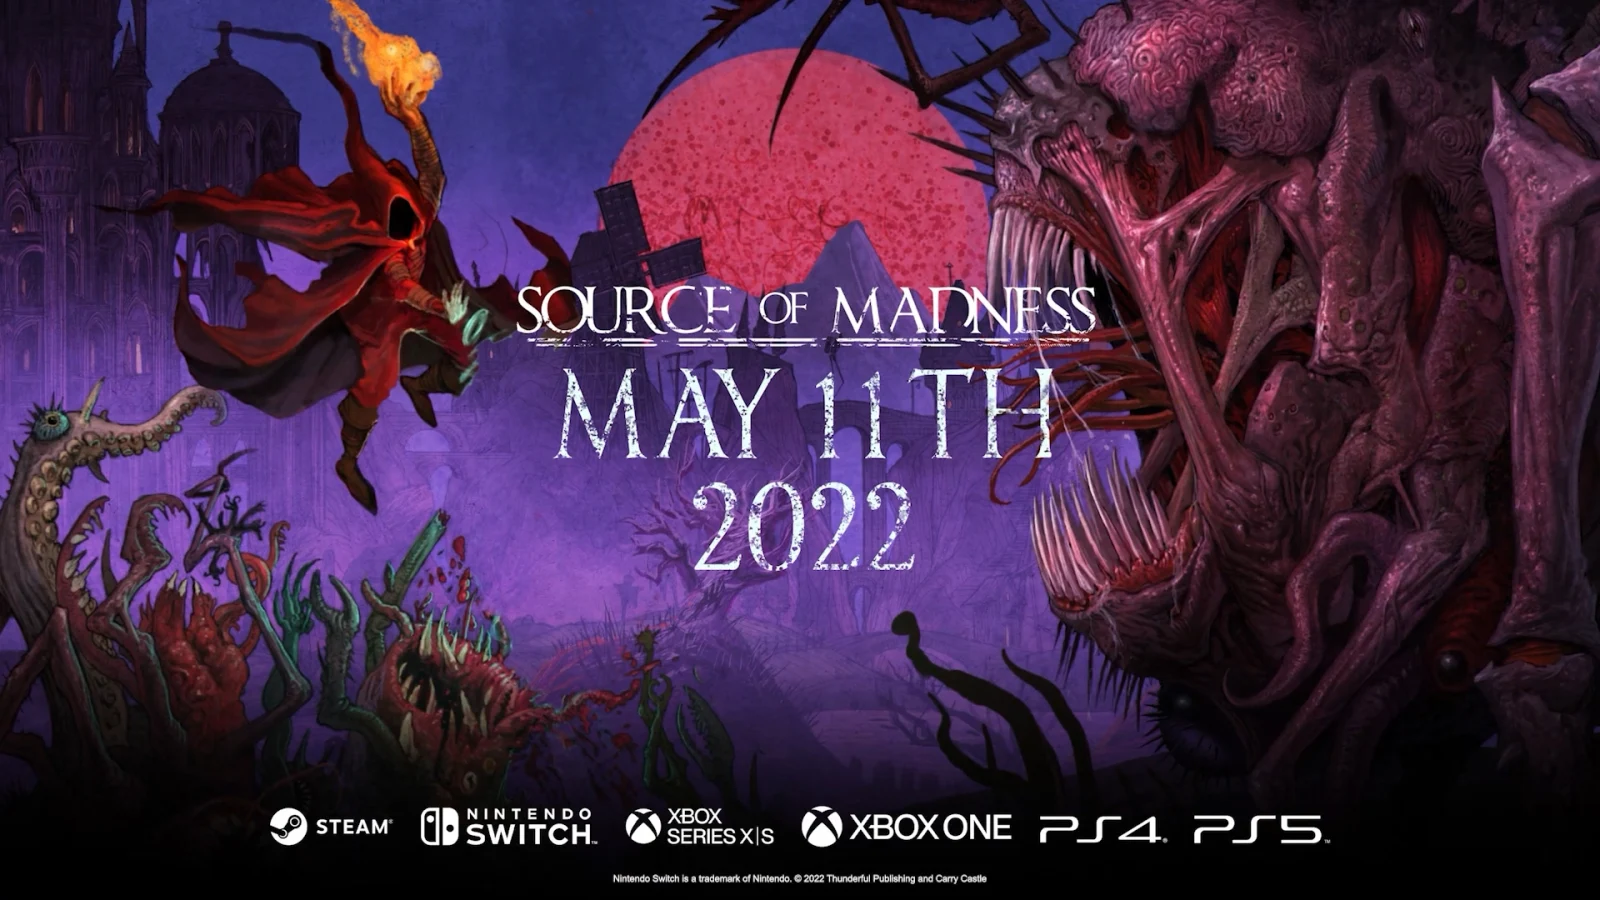 横版Roguelite动作游戏《Source of Madness》将于5月11日登陆主机平台